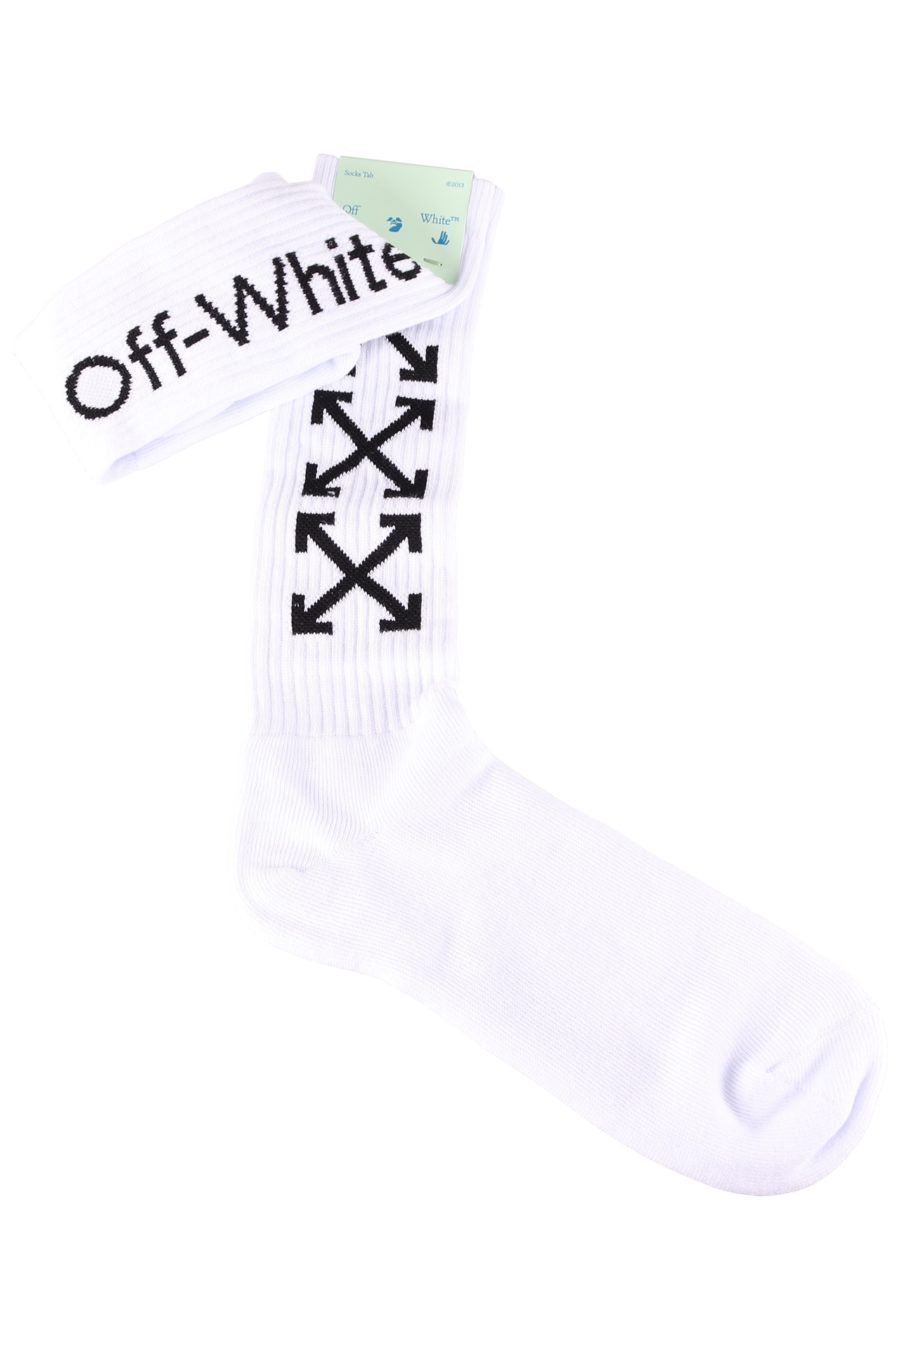 Chaussettes Off-White blanches avec flèches noires - c2f5fd8eaeaea1f617c841dad46eff0d3defea87dd